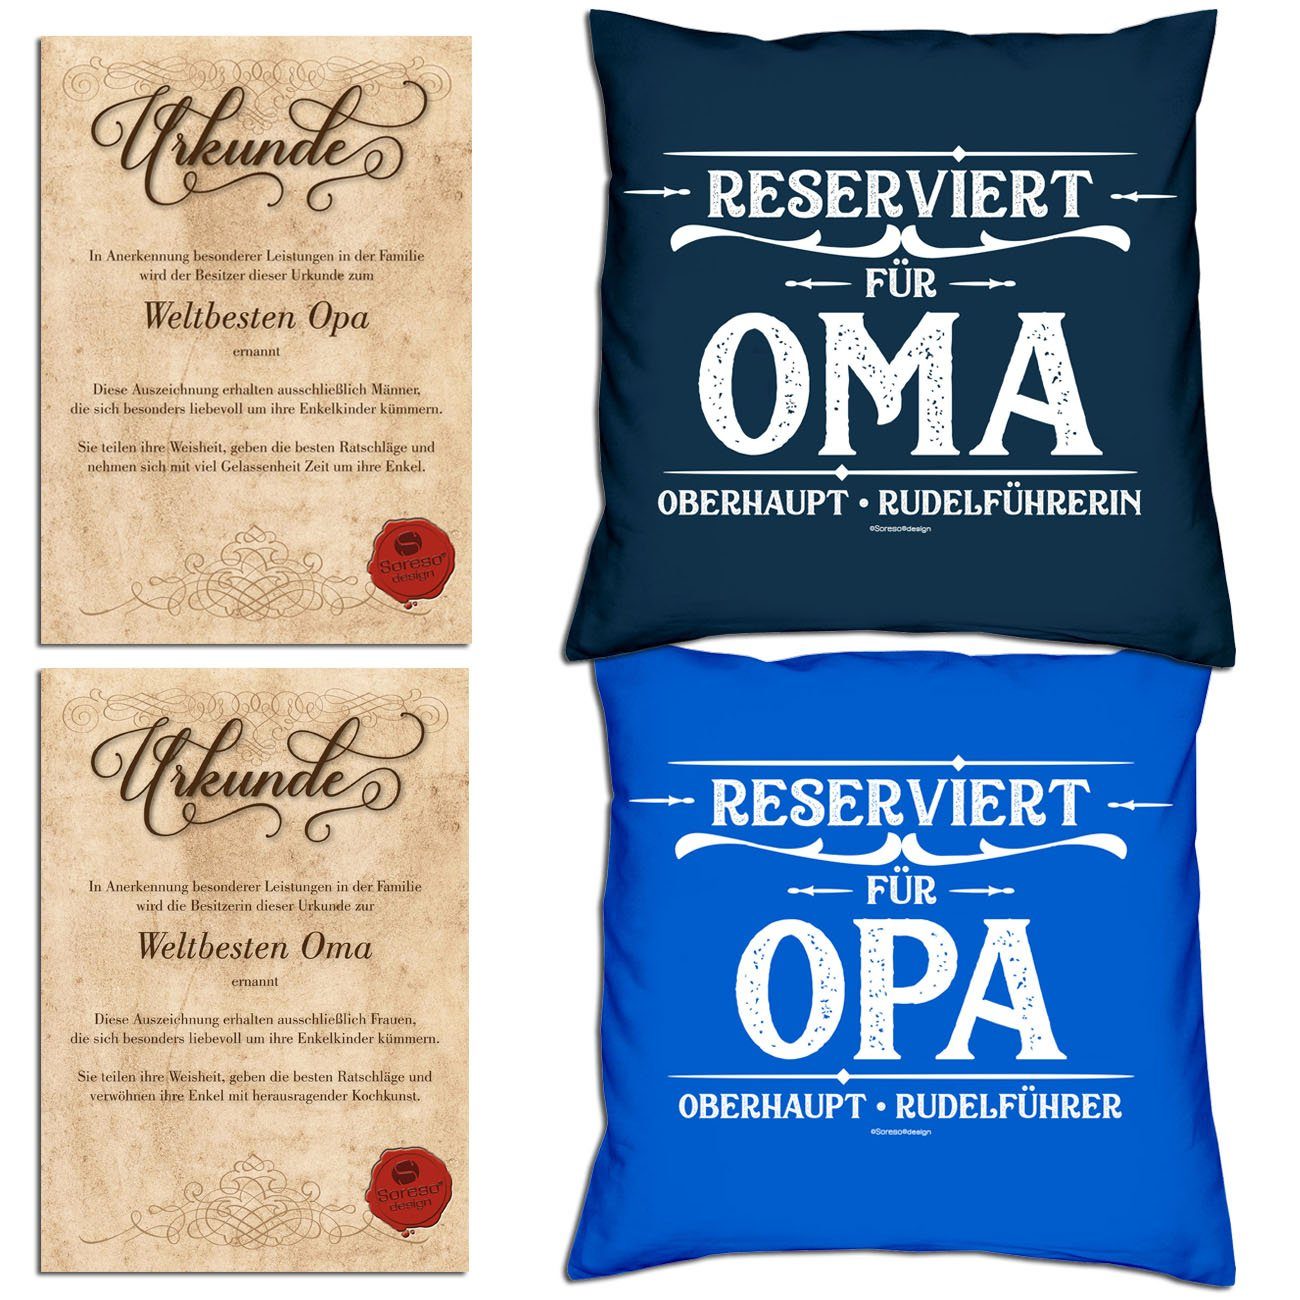 Soreso® Dekokissen Kissen-Set Reserviert für Opa Reserviert für Oma mit Urkunden, B/T 40x40 cm, mit Reißverschluss, komplett mit Füllung navy-blau